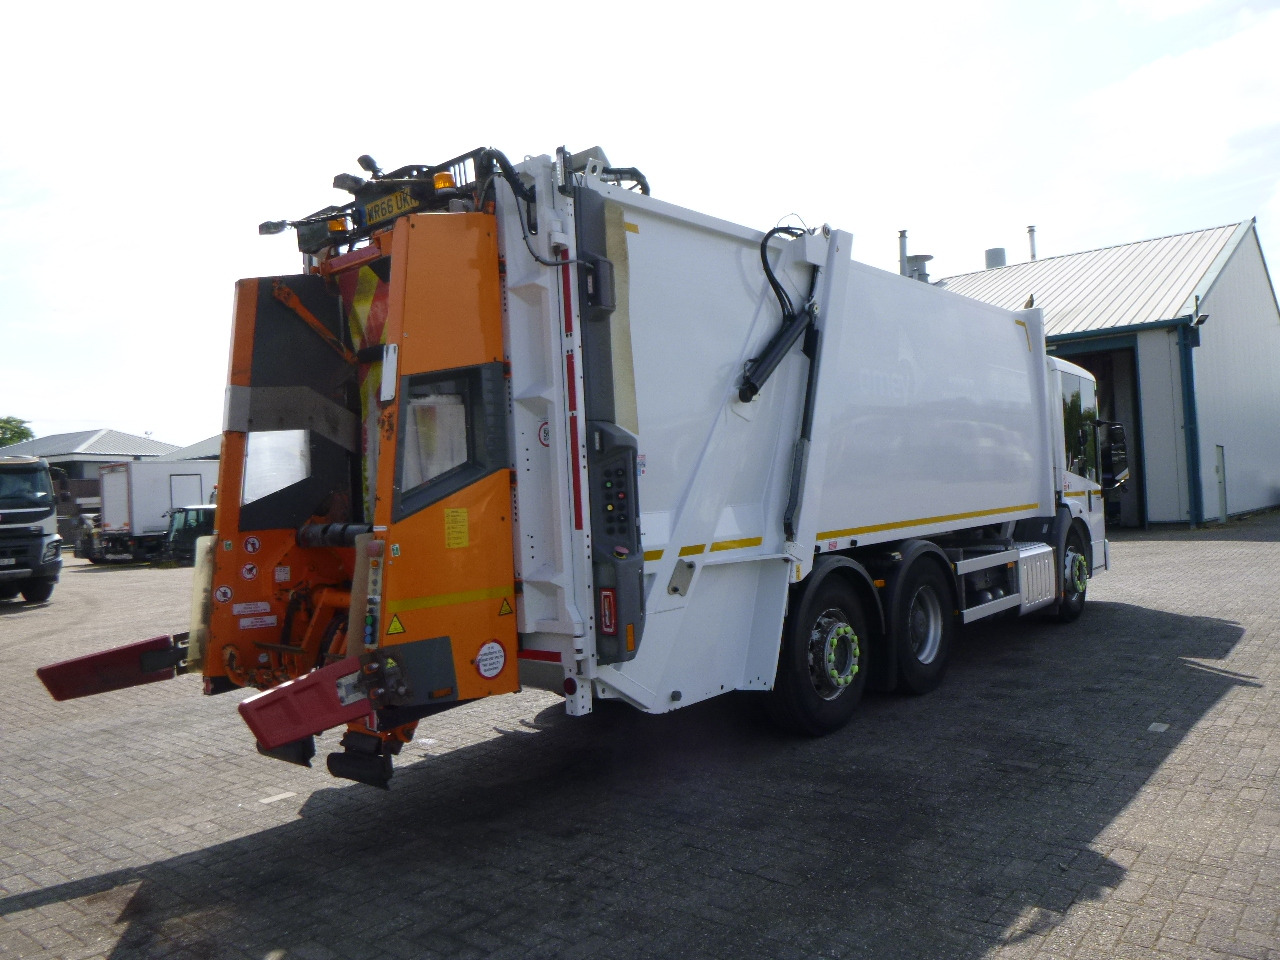 Vůz na odvoz odpadků Mercedes Econic 2630 6x2 RHD Euro 6 Refuse truck: obrázek 3